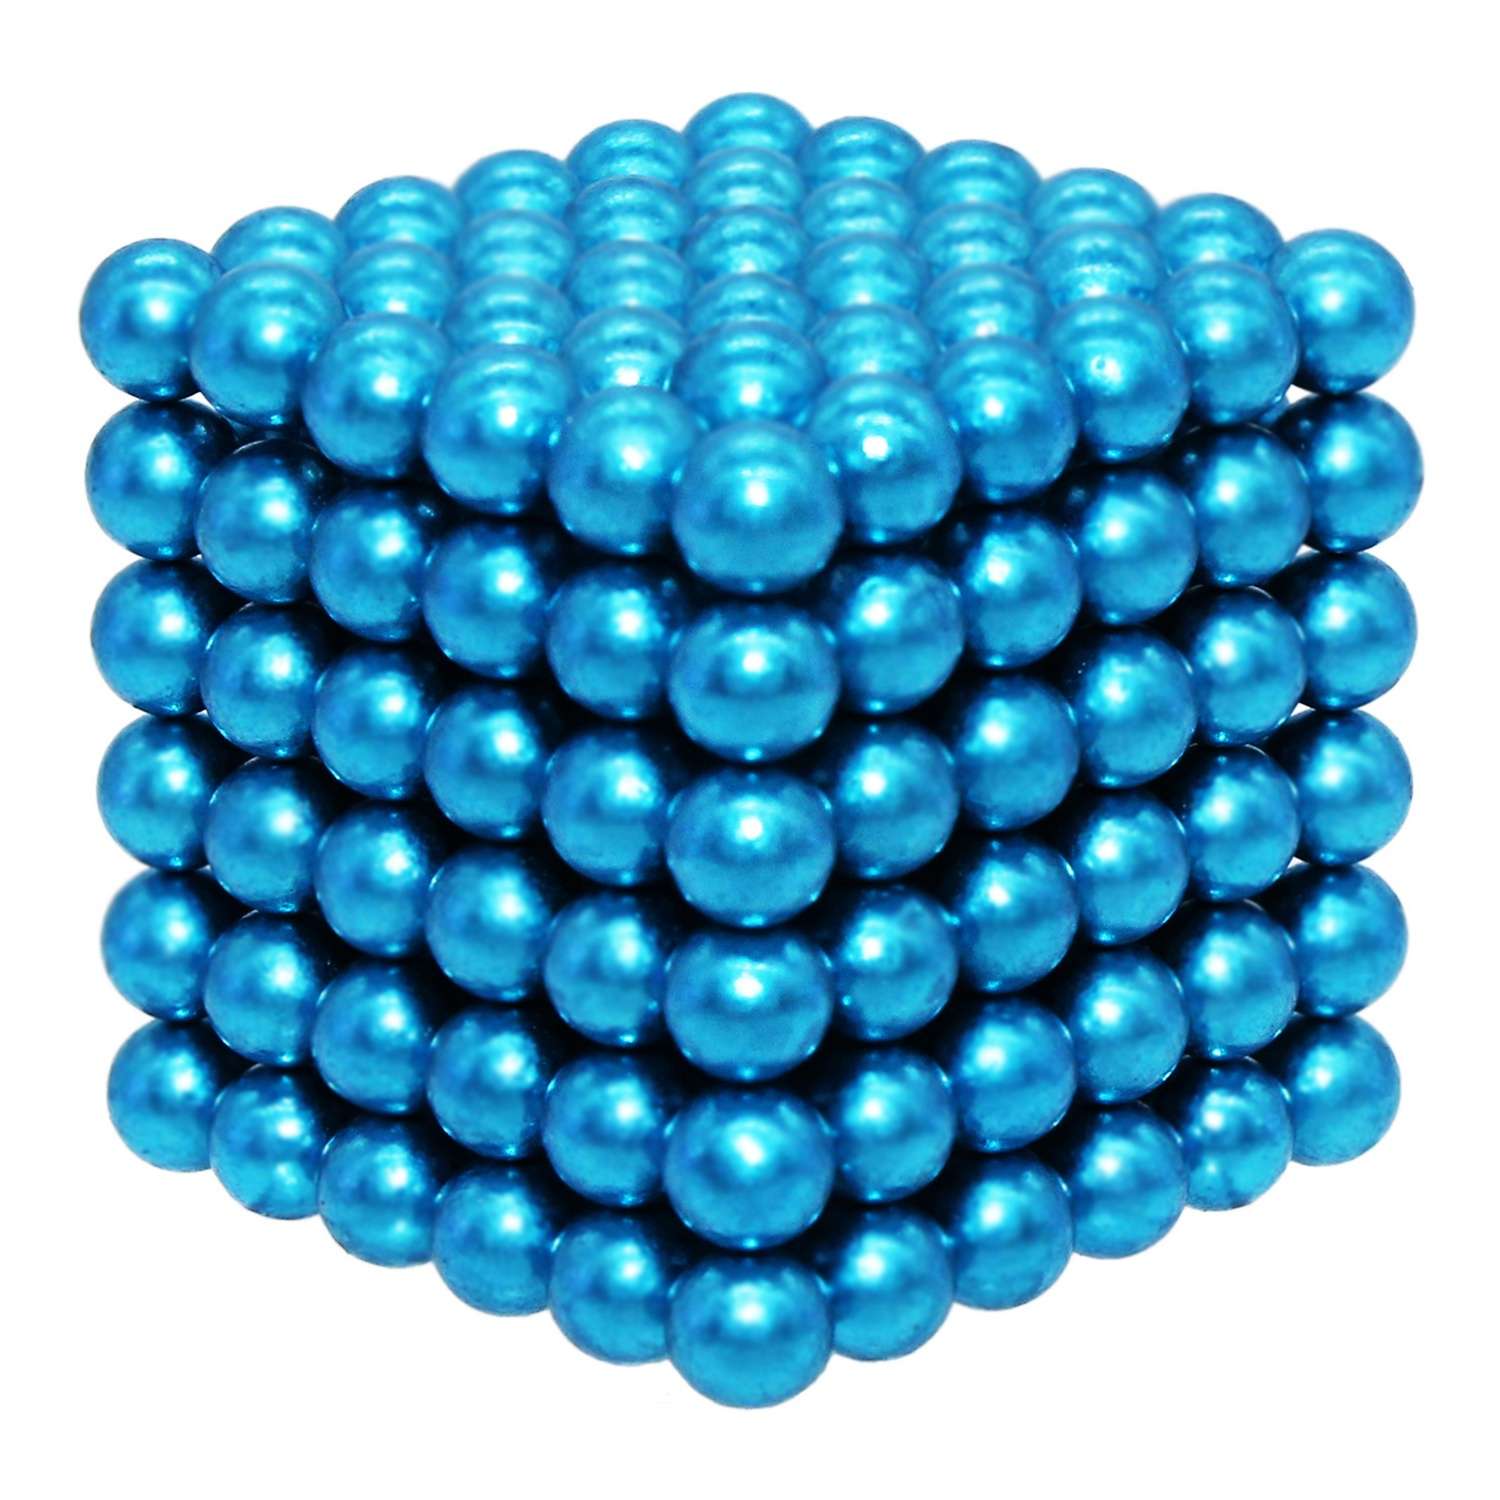 Головоломка магнитная Magnetic Cube голубой неокуб 216 элементов - фото 6